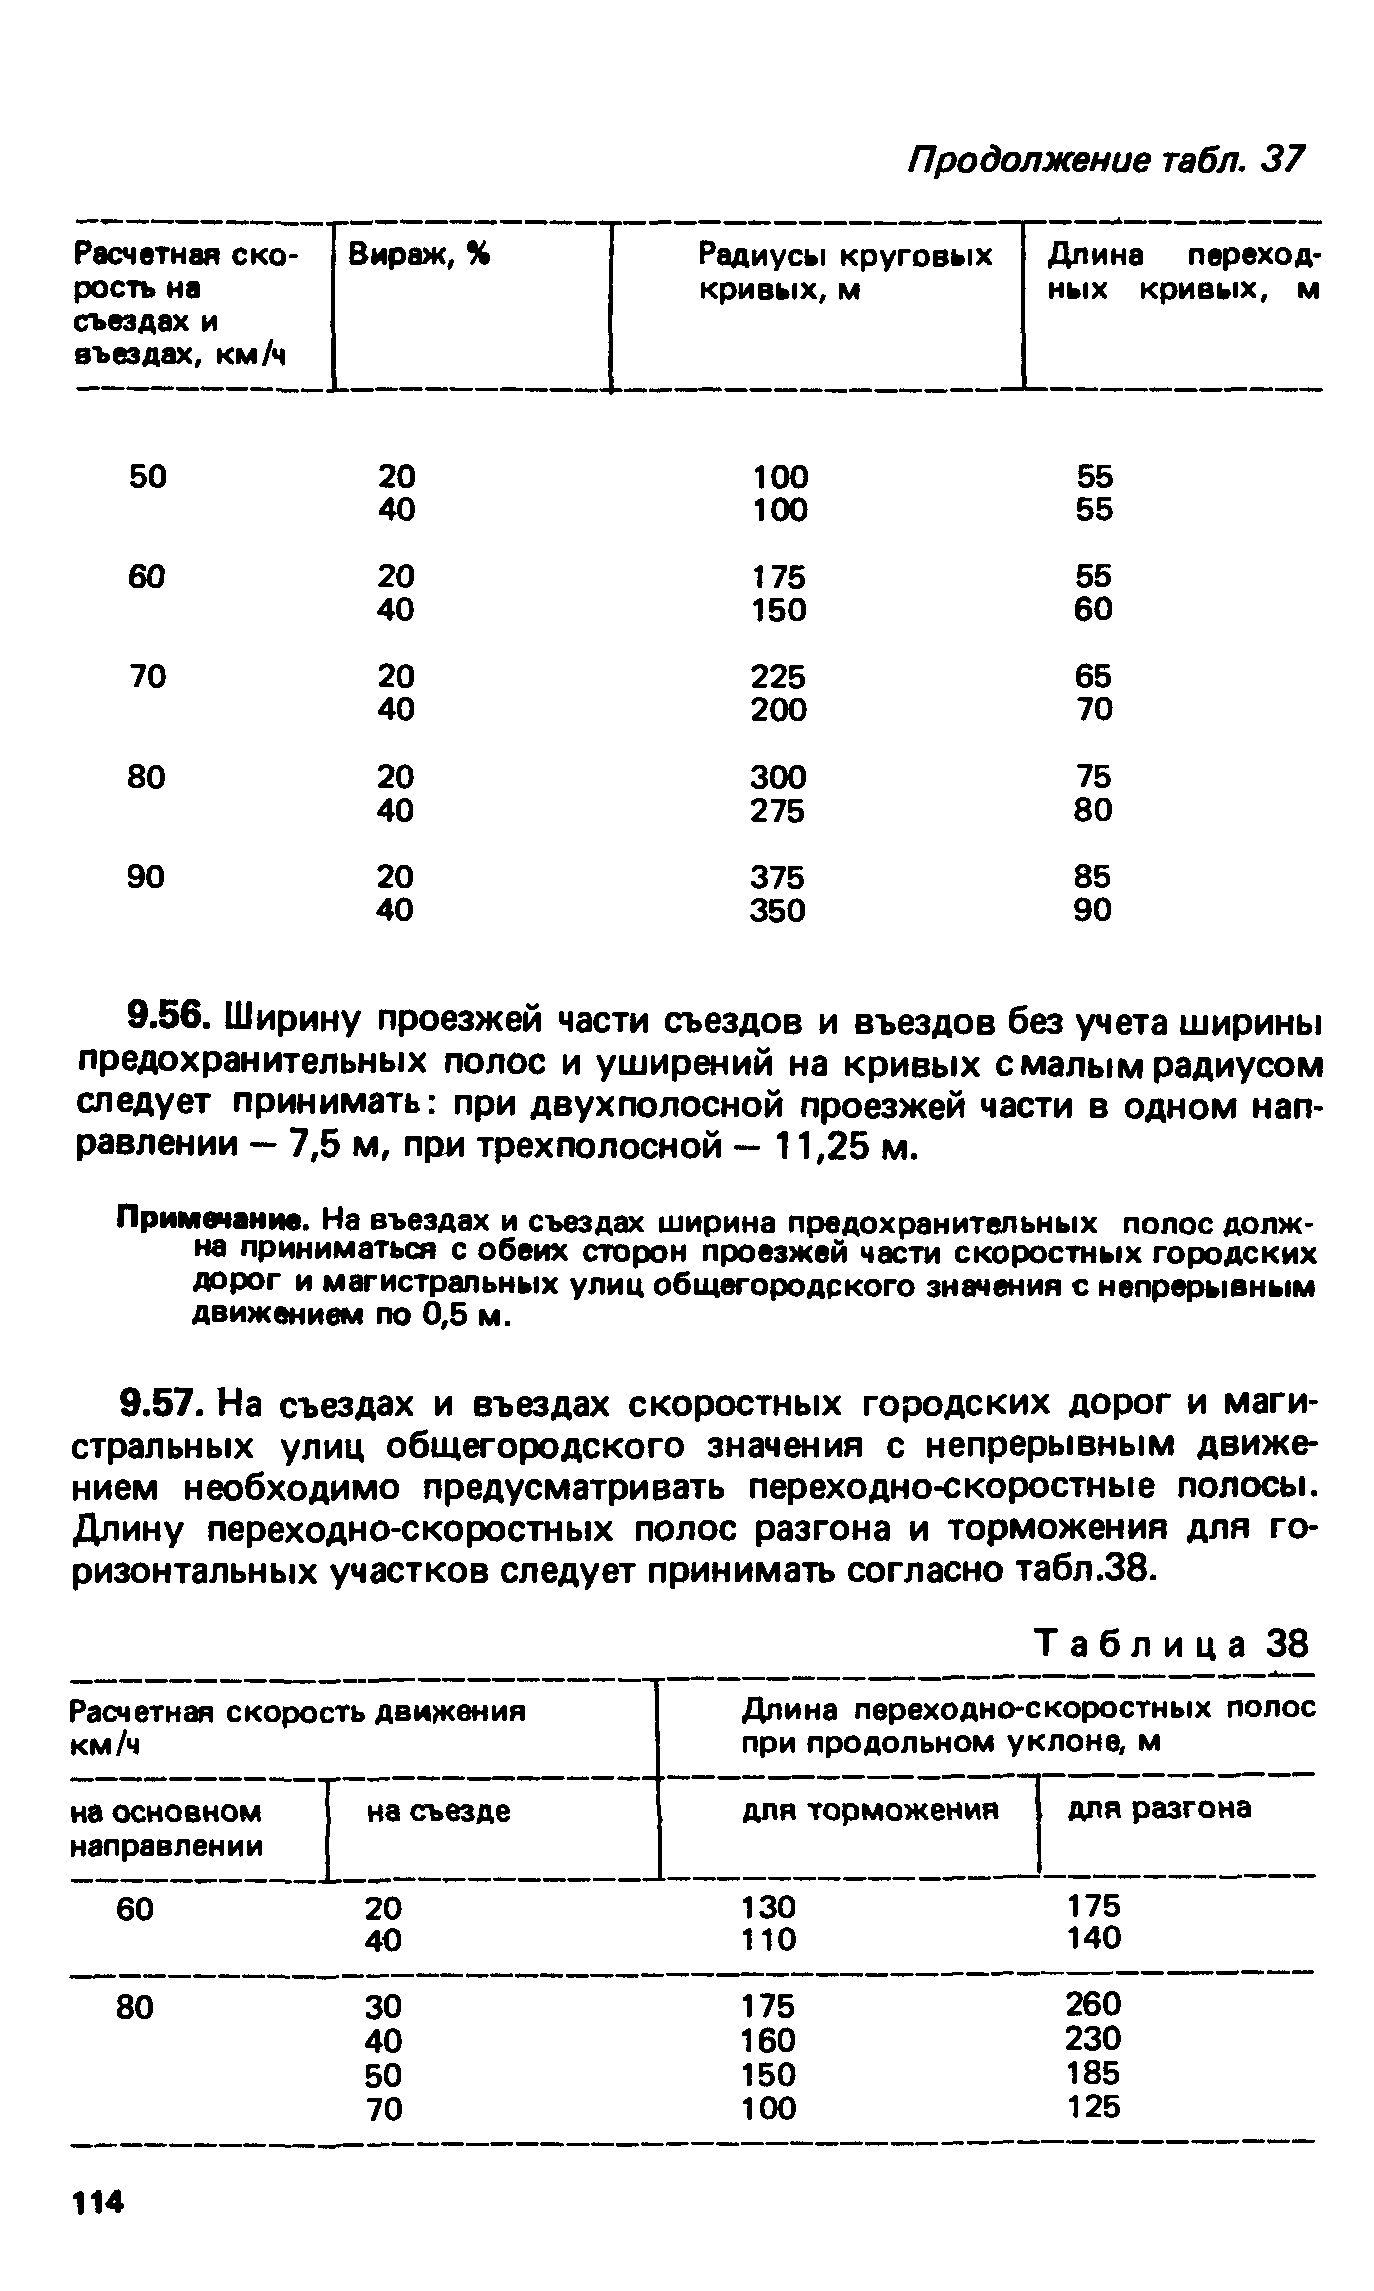 ВСН 2-85